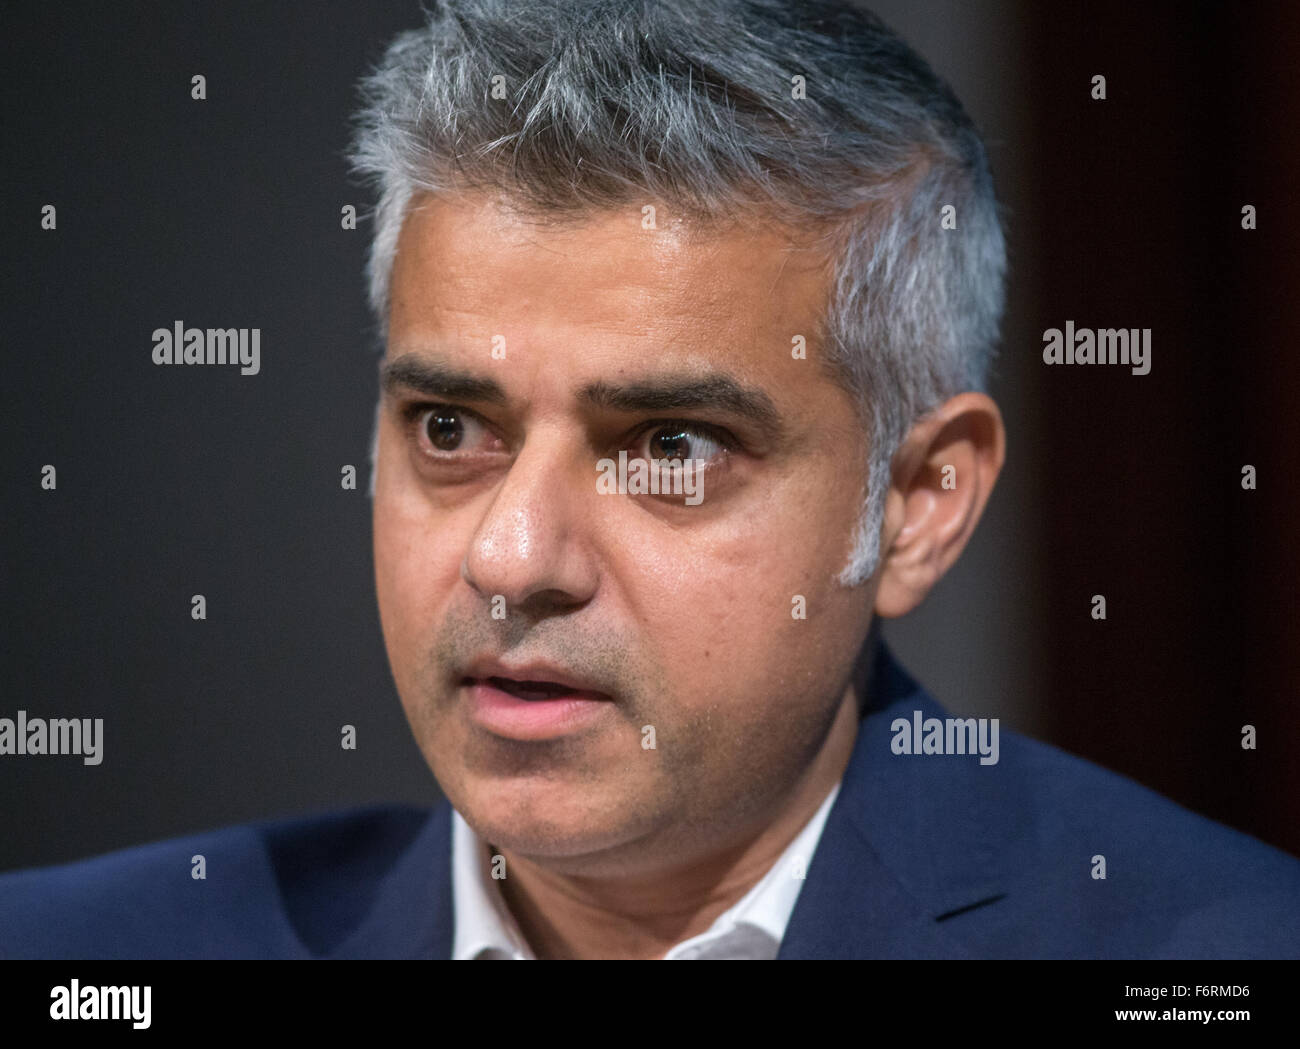 Candidato a la alcaldía de Londres por trabajo,Sadiq Khan, habla en un evento acerca de sus planes para Londres,si es elegido Foto de stock